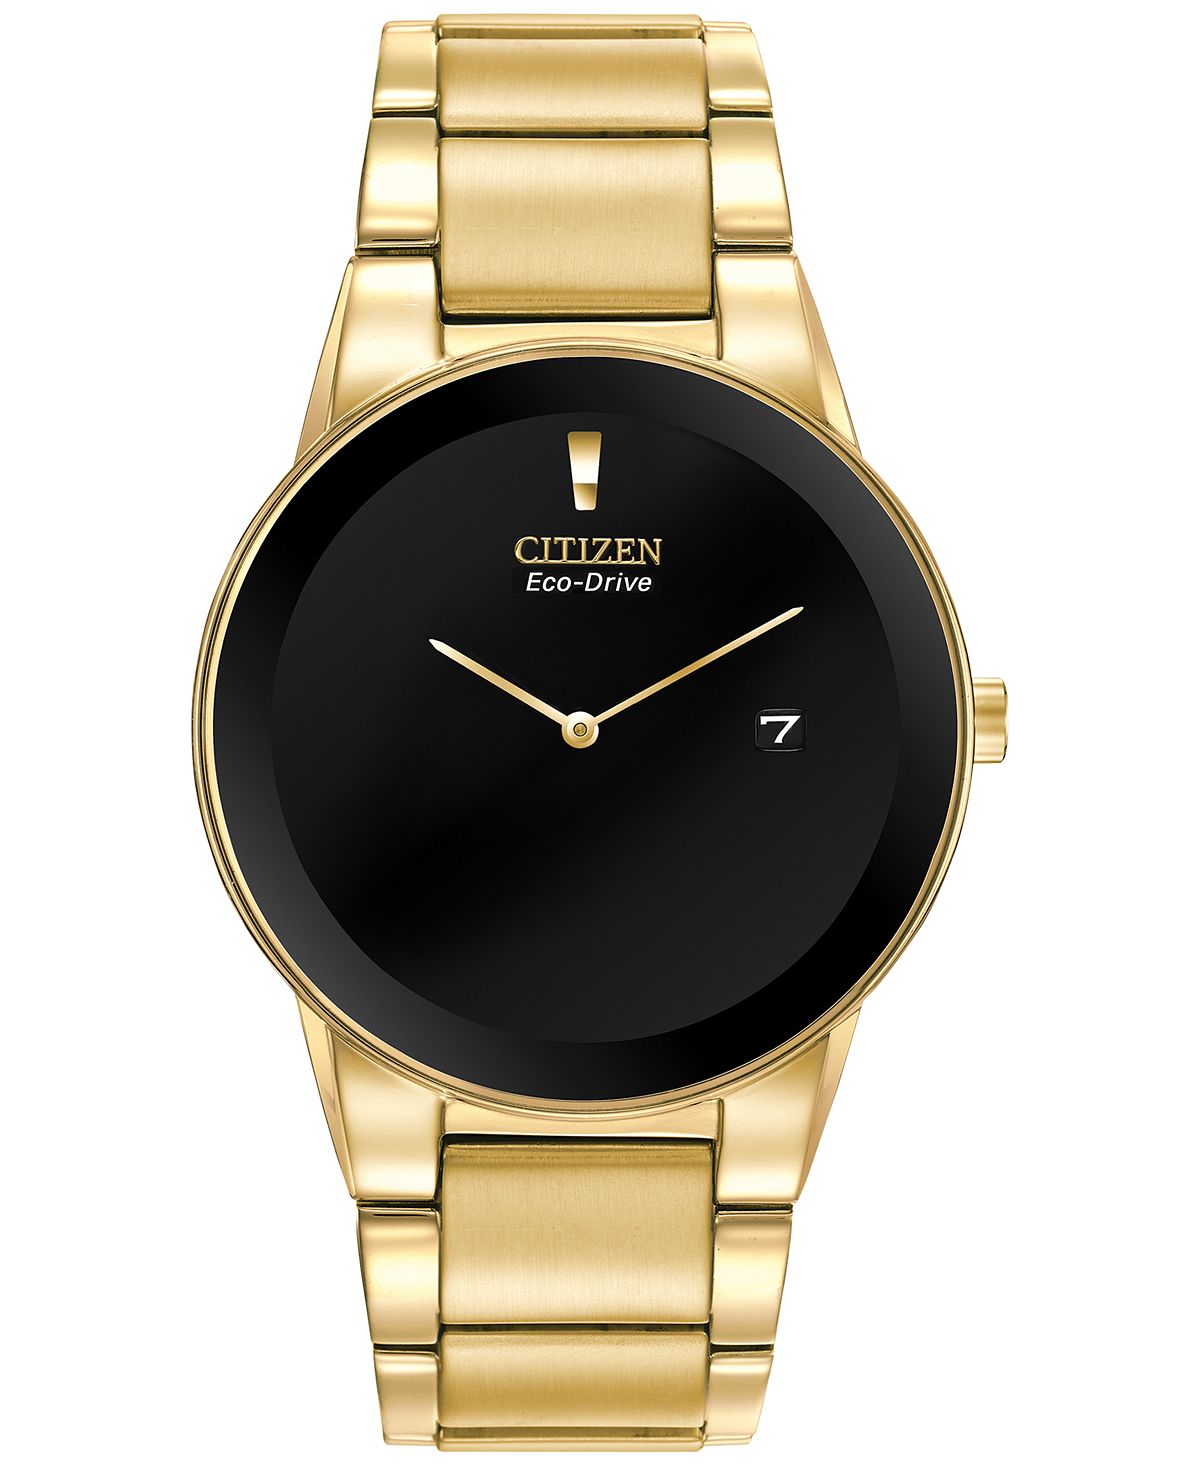 Мужские часы Axiom Eco-Drive с золотистым браслетом из нержавеющей стали, 40 мм, AU1062-56E Citizen часы citizen bf2013 56e